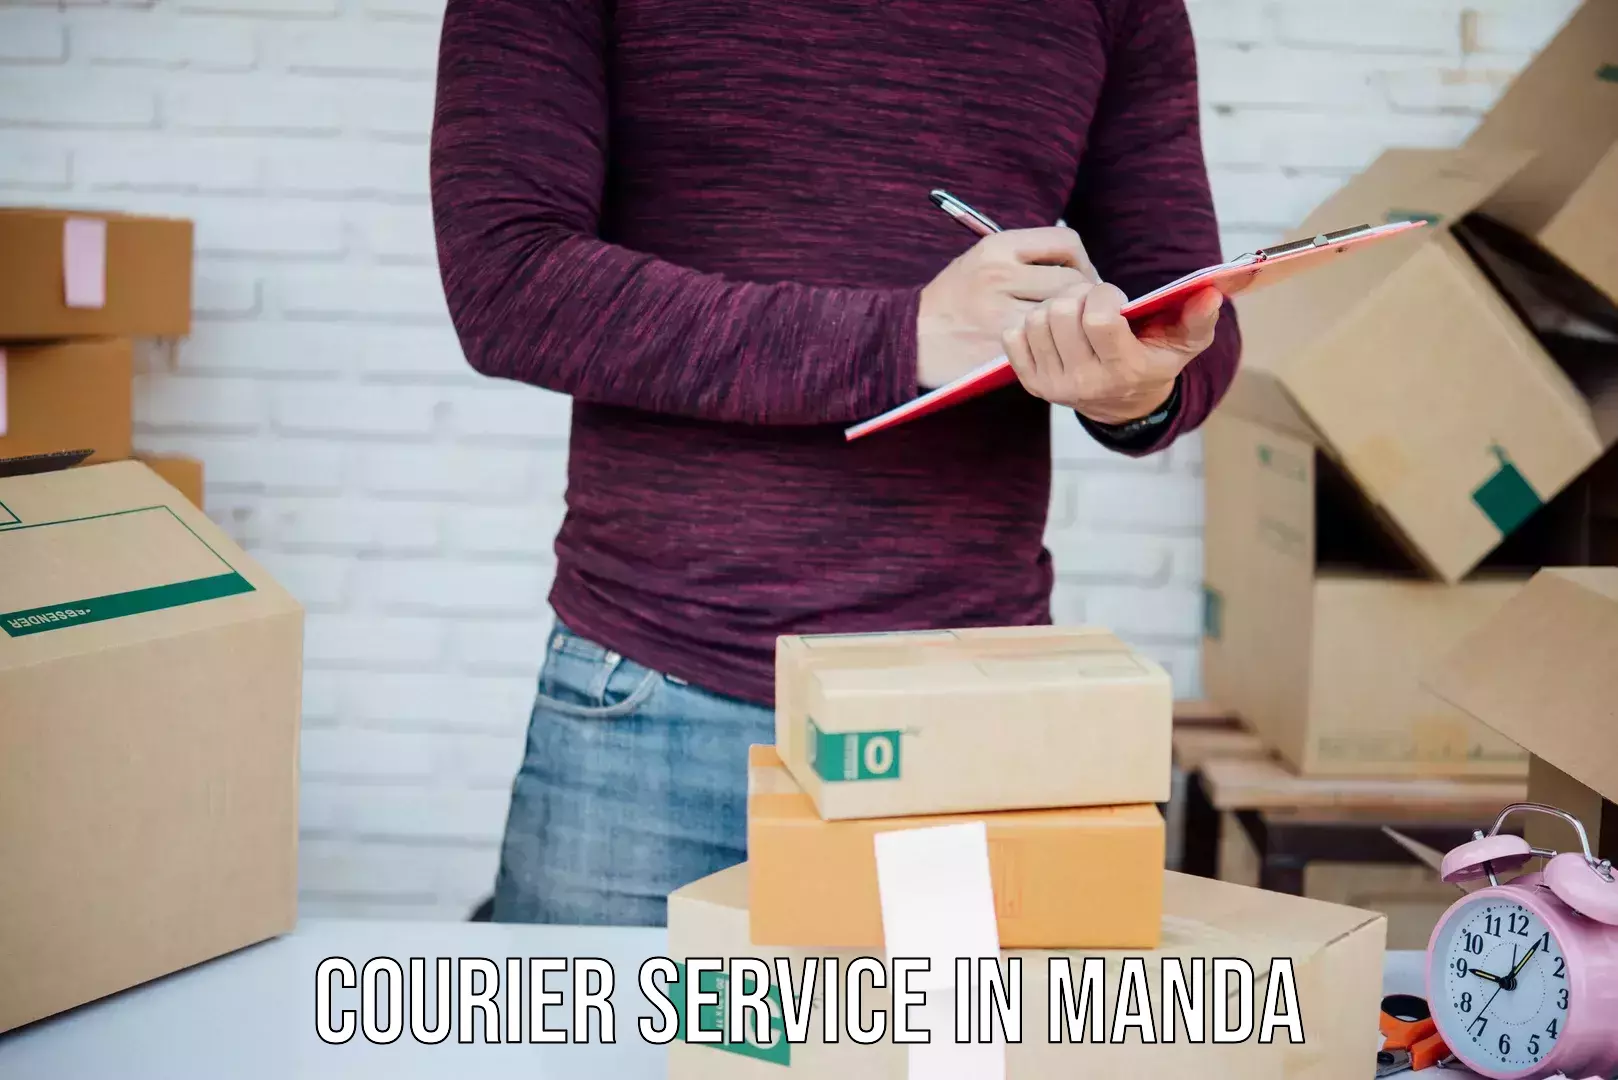 Premium courier solutions in Manda